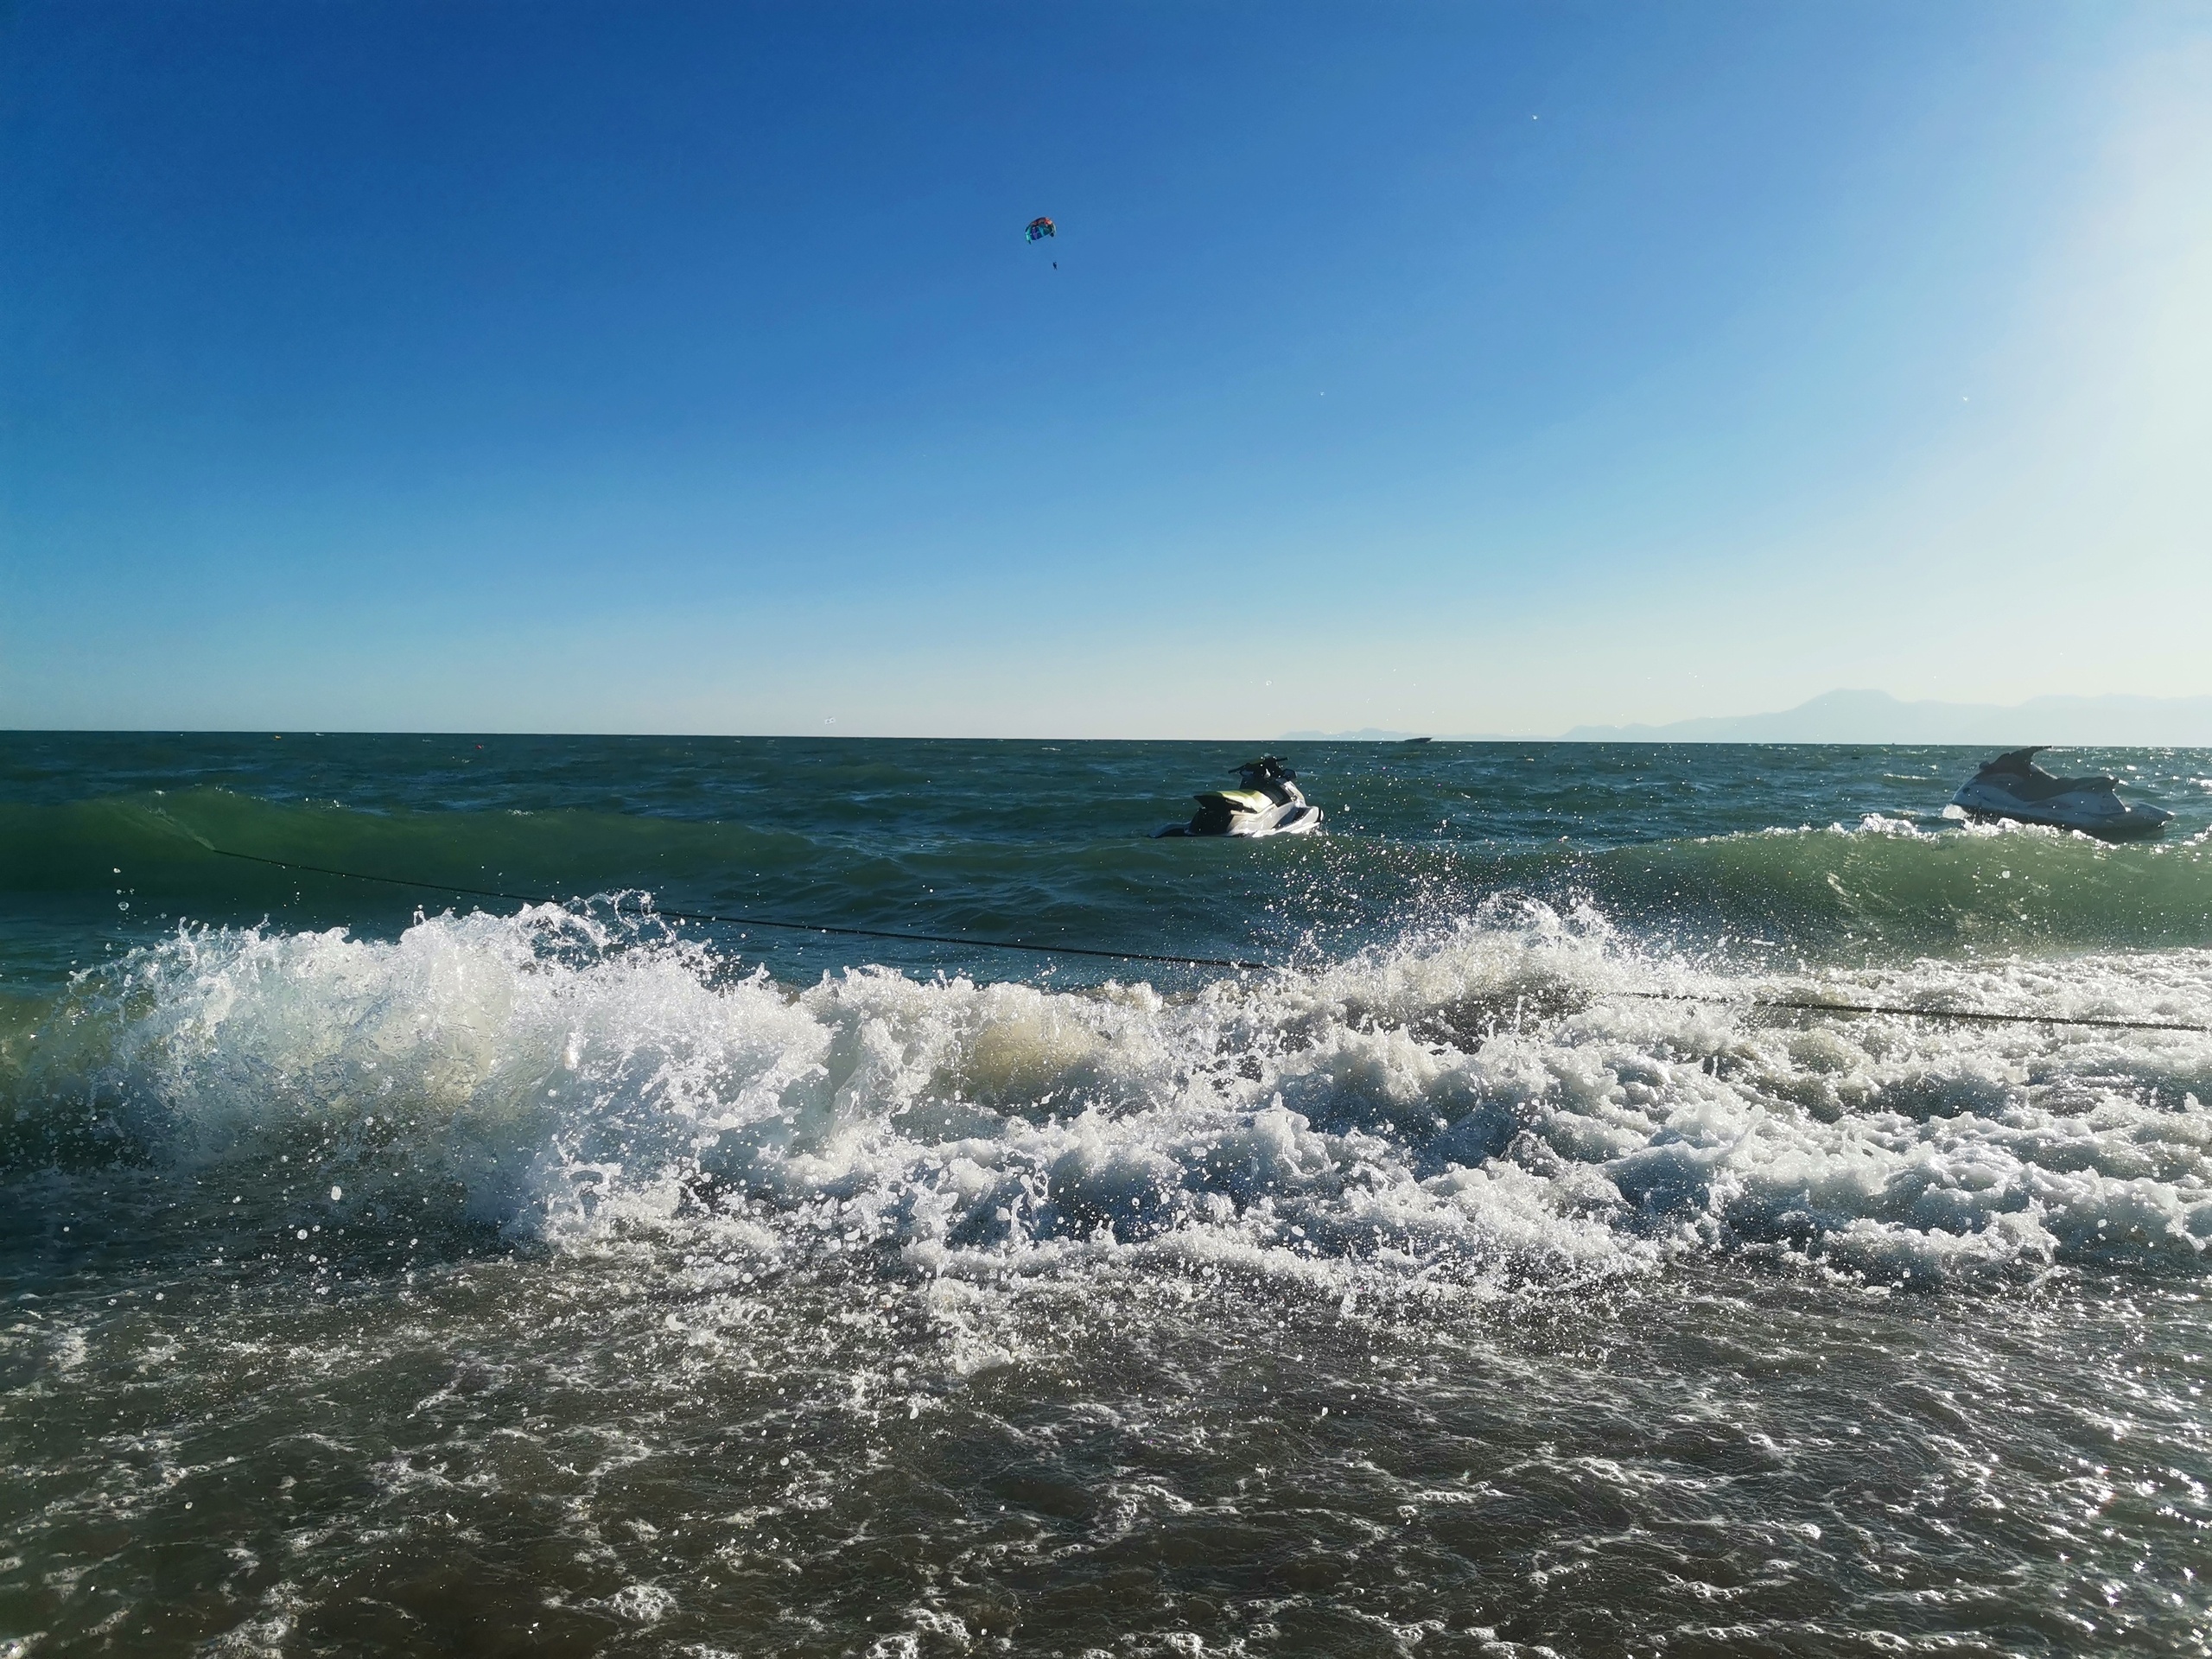 В воду не пускают, сидим на берегу: на пляжах Анапы ввели полный запрет на купание в Черном море